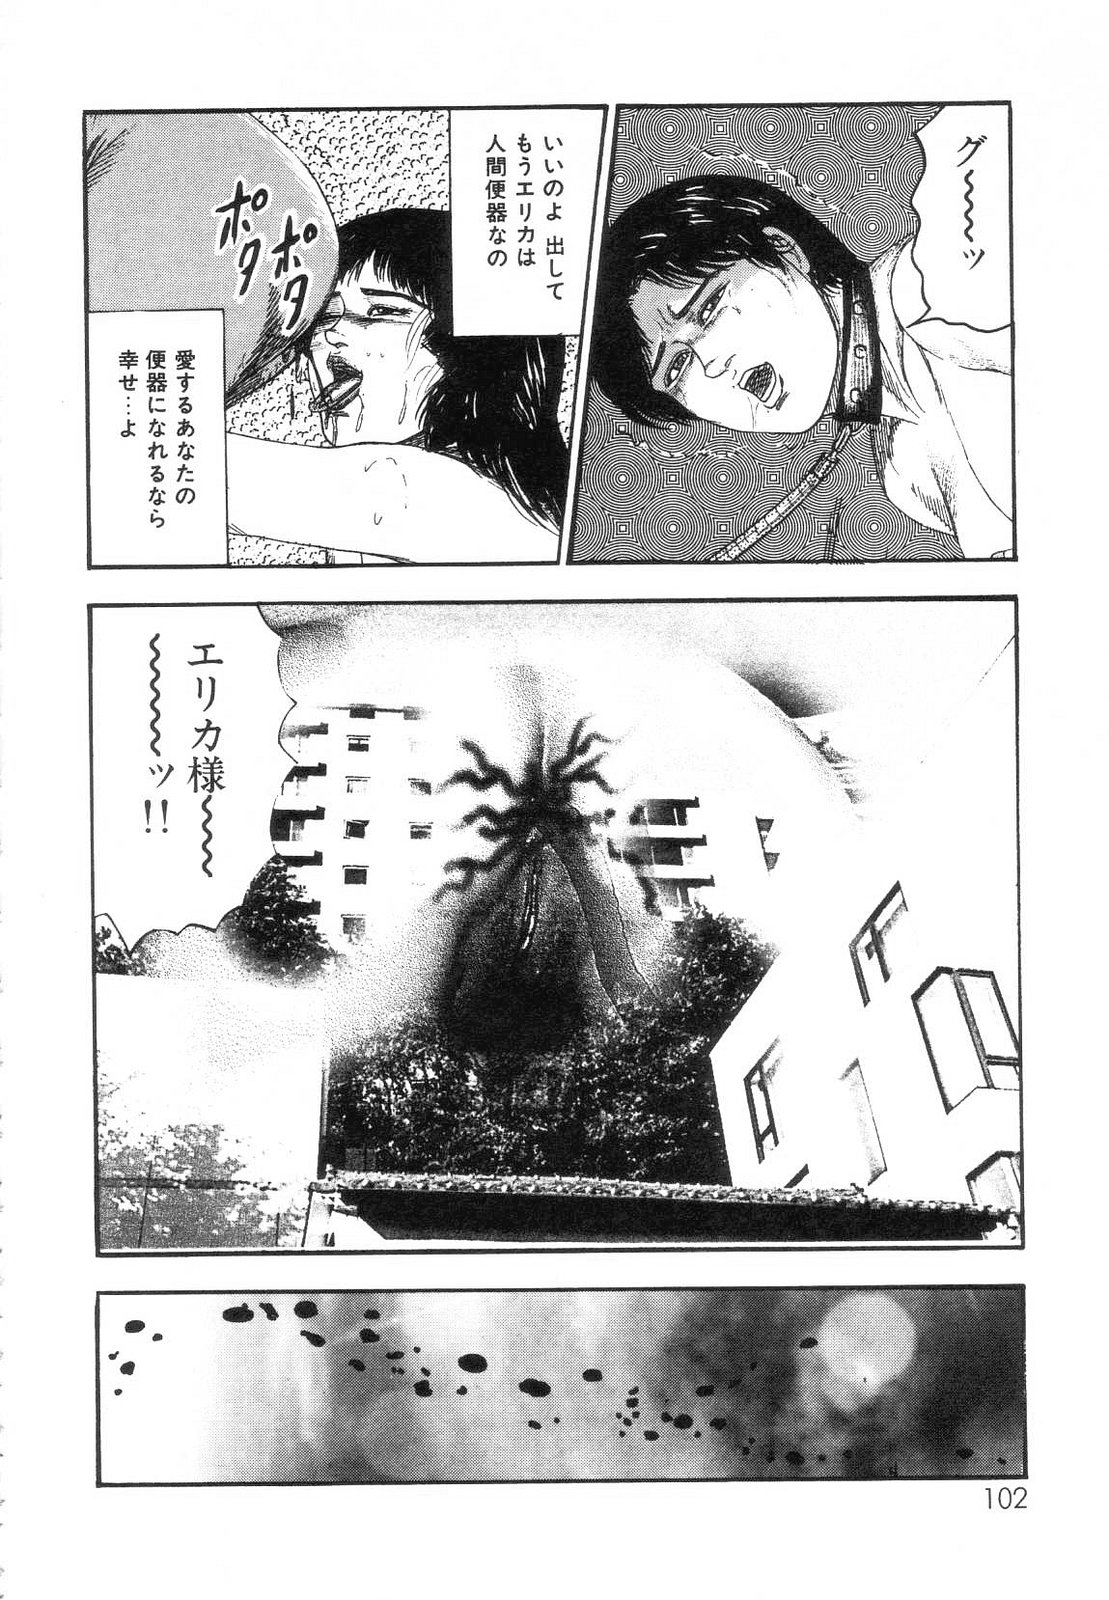 [Sanjou Tomomi] Shiro no Mokushiroku Vol. 7 - Shiiku Ningyou Erika no Shou 103